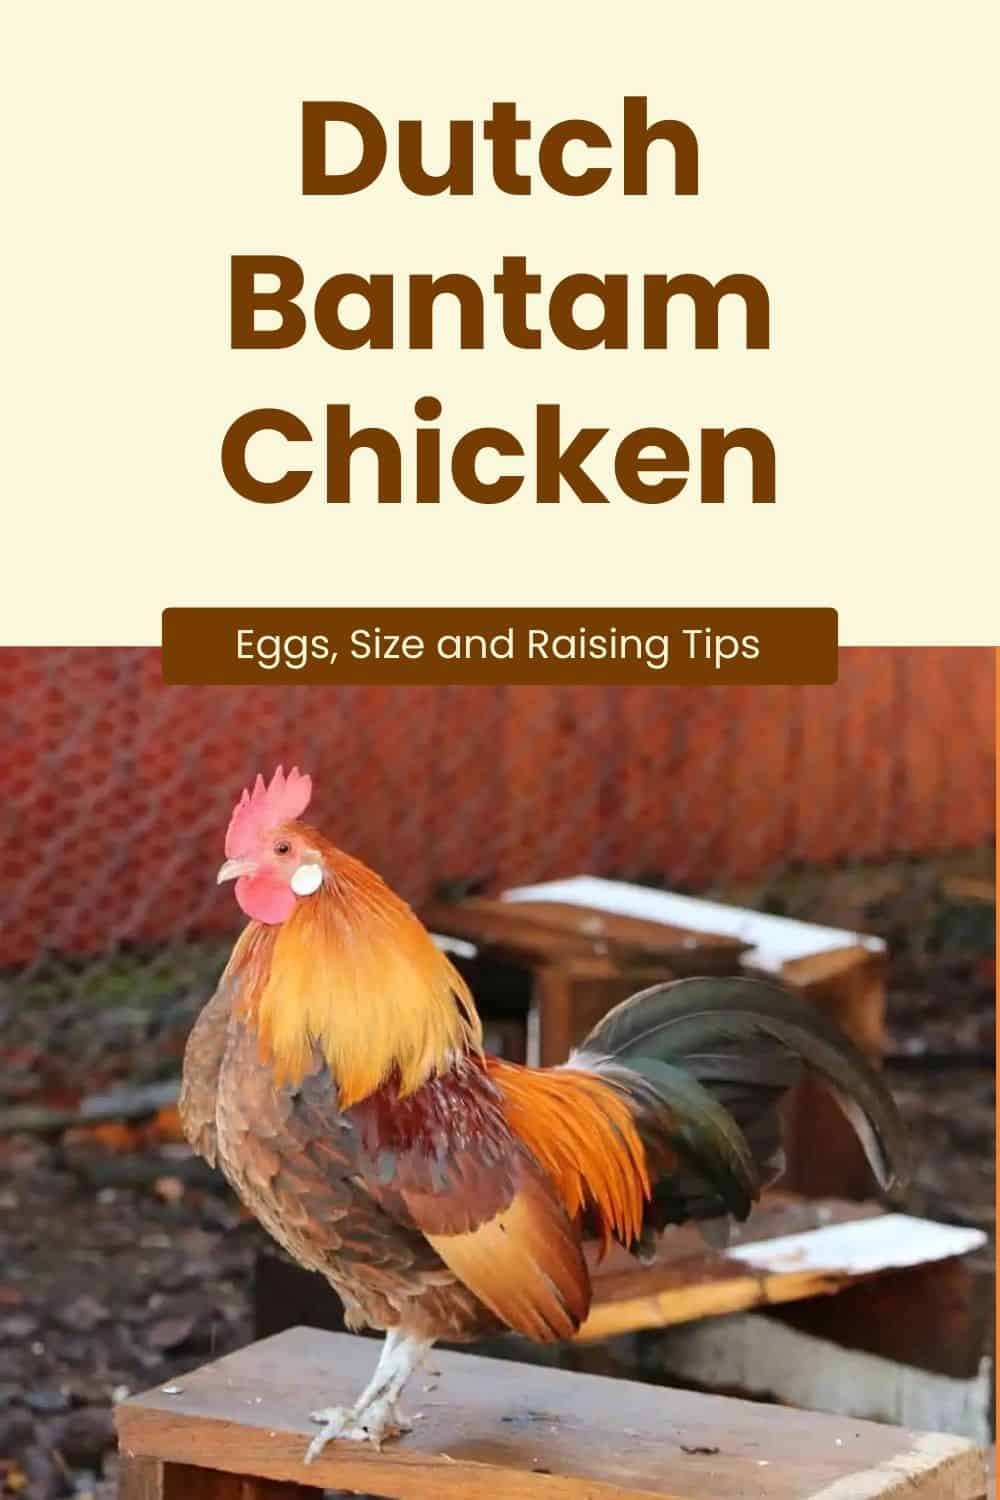 Dutch Bantam Chicken breed